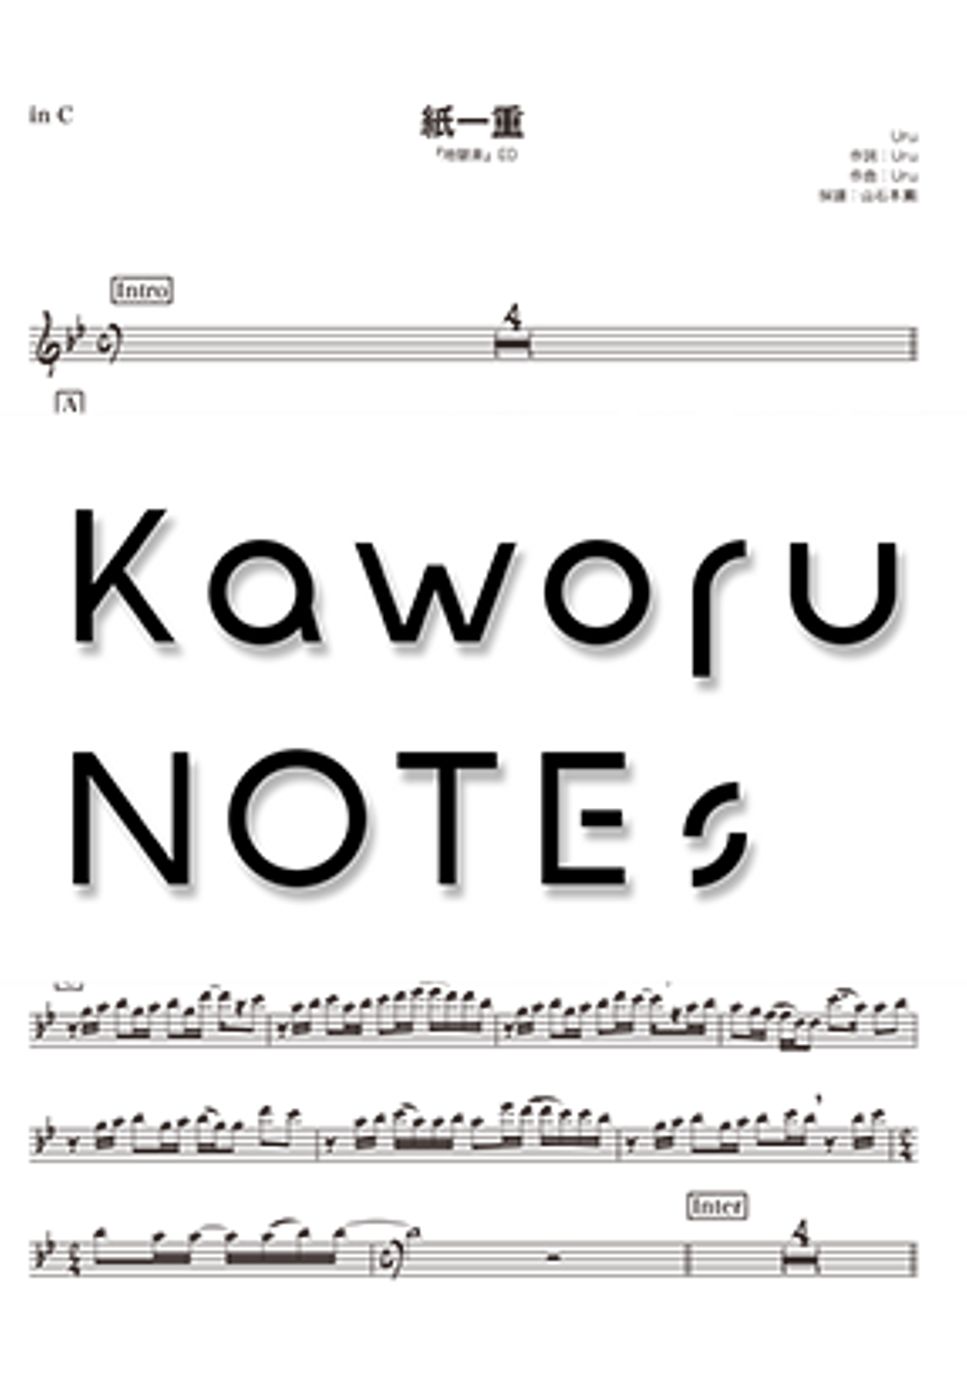 Uru - 纸一重（视频版本《地狱乐》） by Kaworu NOTEs